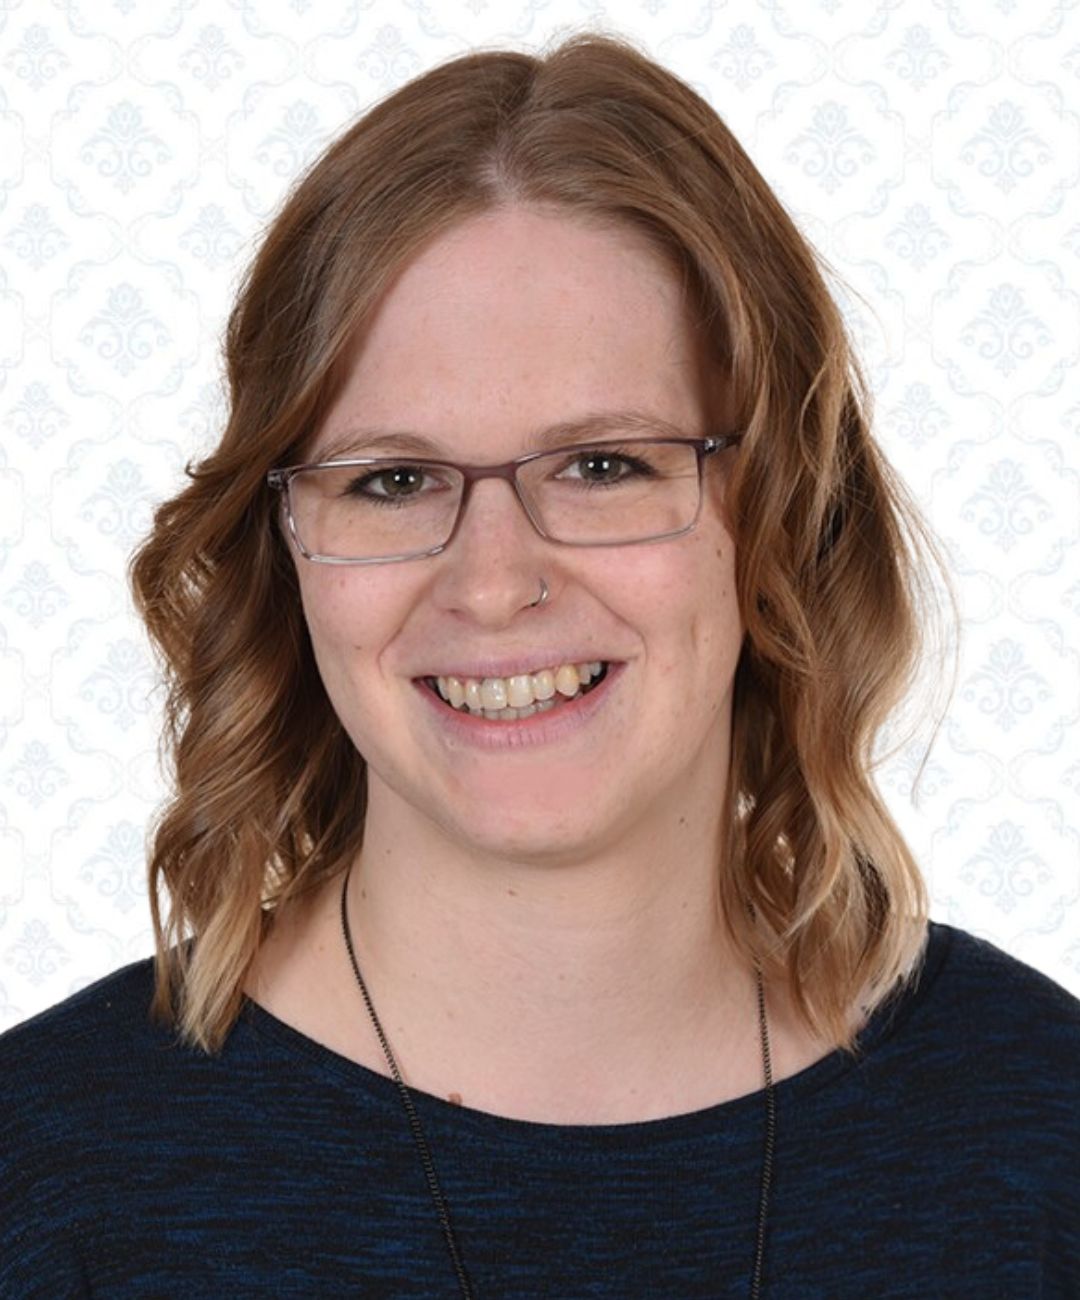 Stefanie Schmelzer, DGKP bei pflege-daheim der Agentur für kompetente 24-Stunden-Betreuung